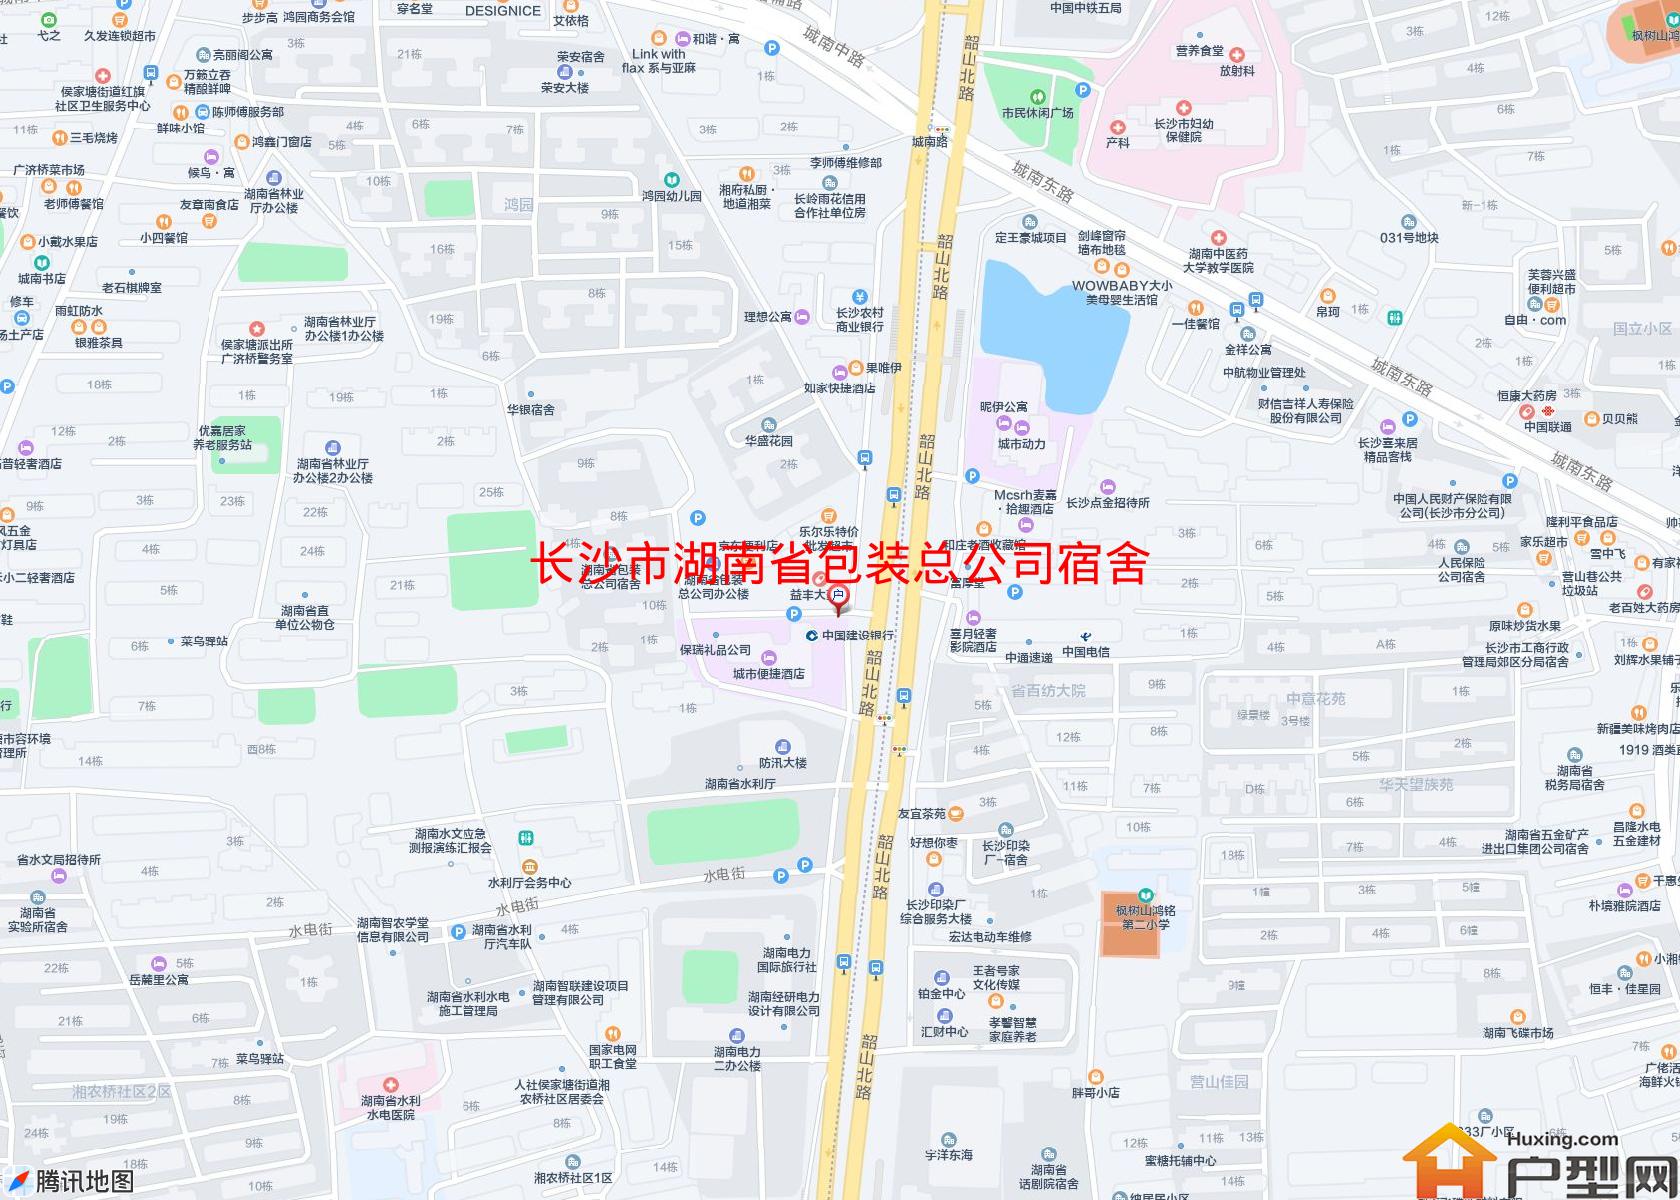 湖南省包装总公司宿舍小区 - 户型网